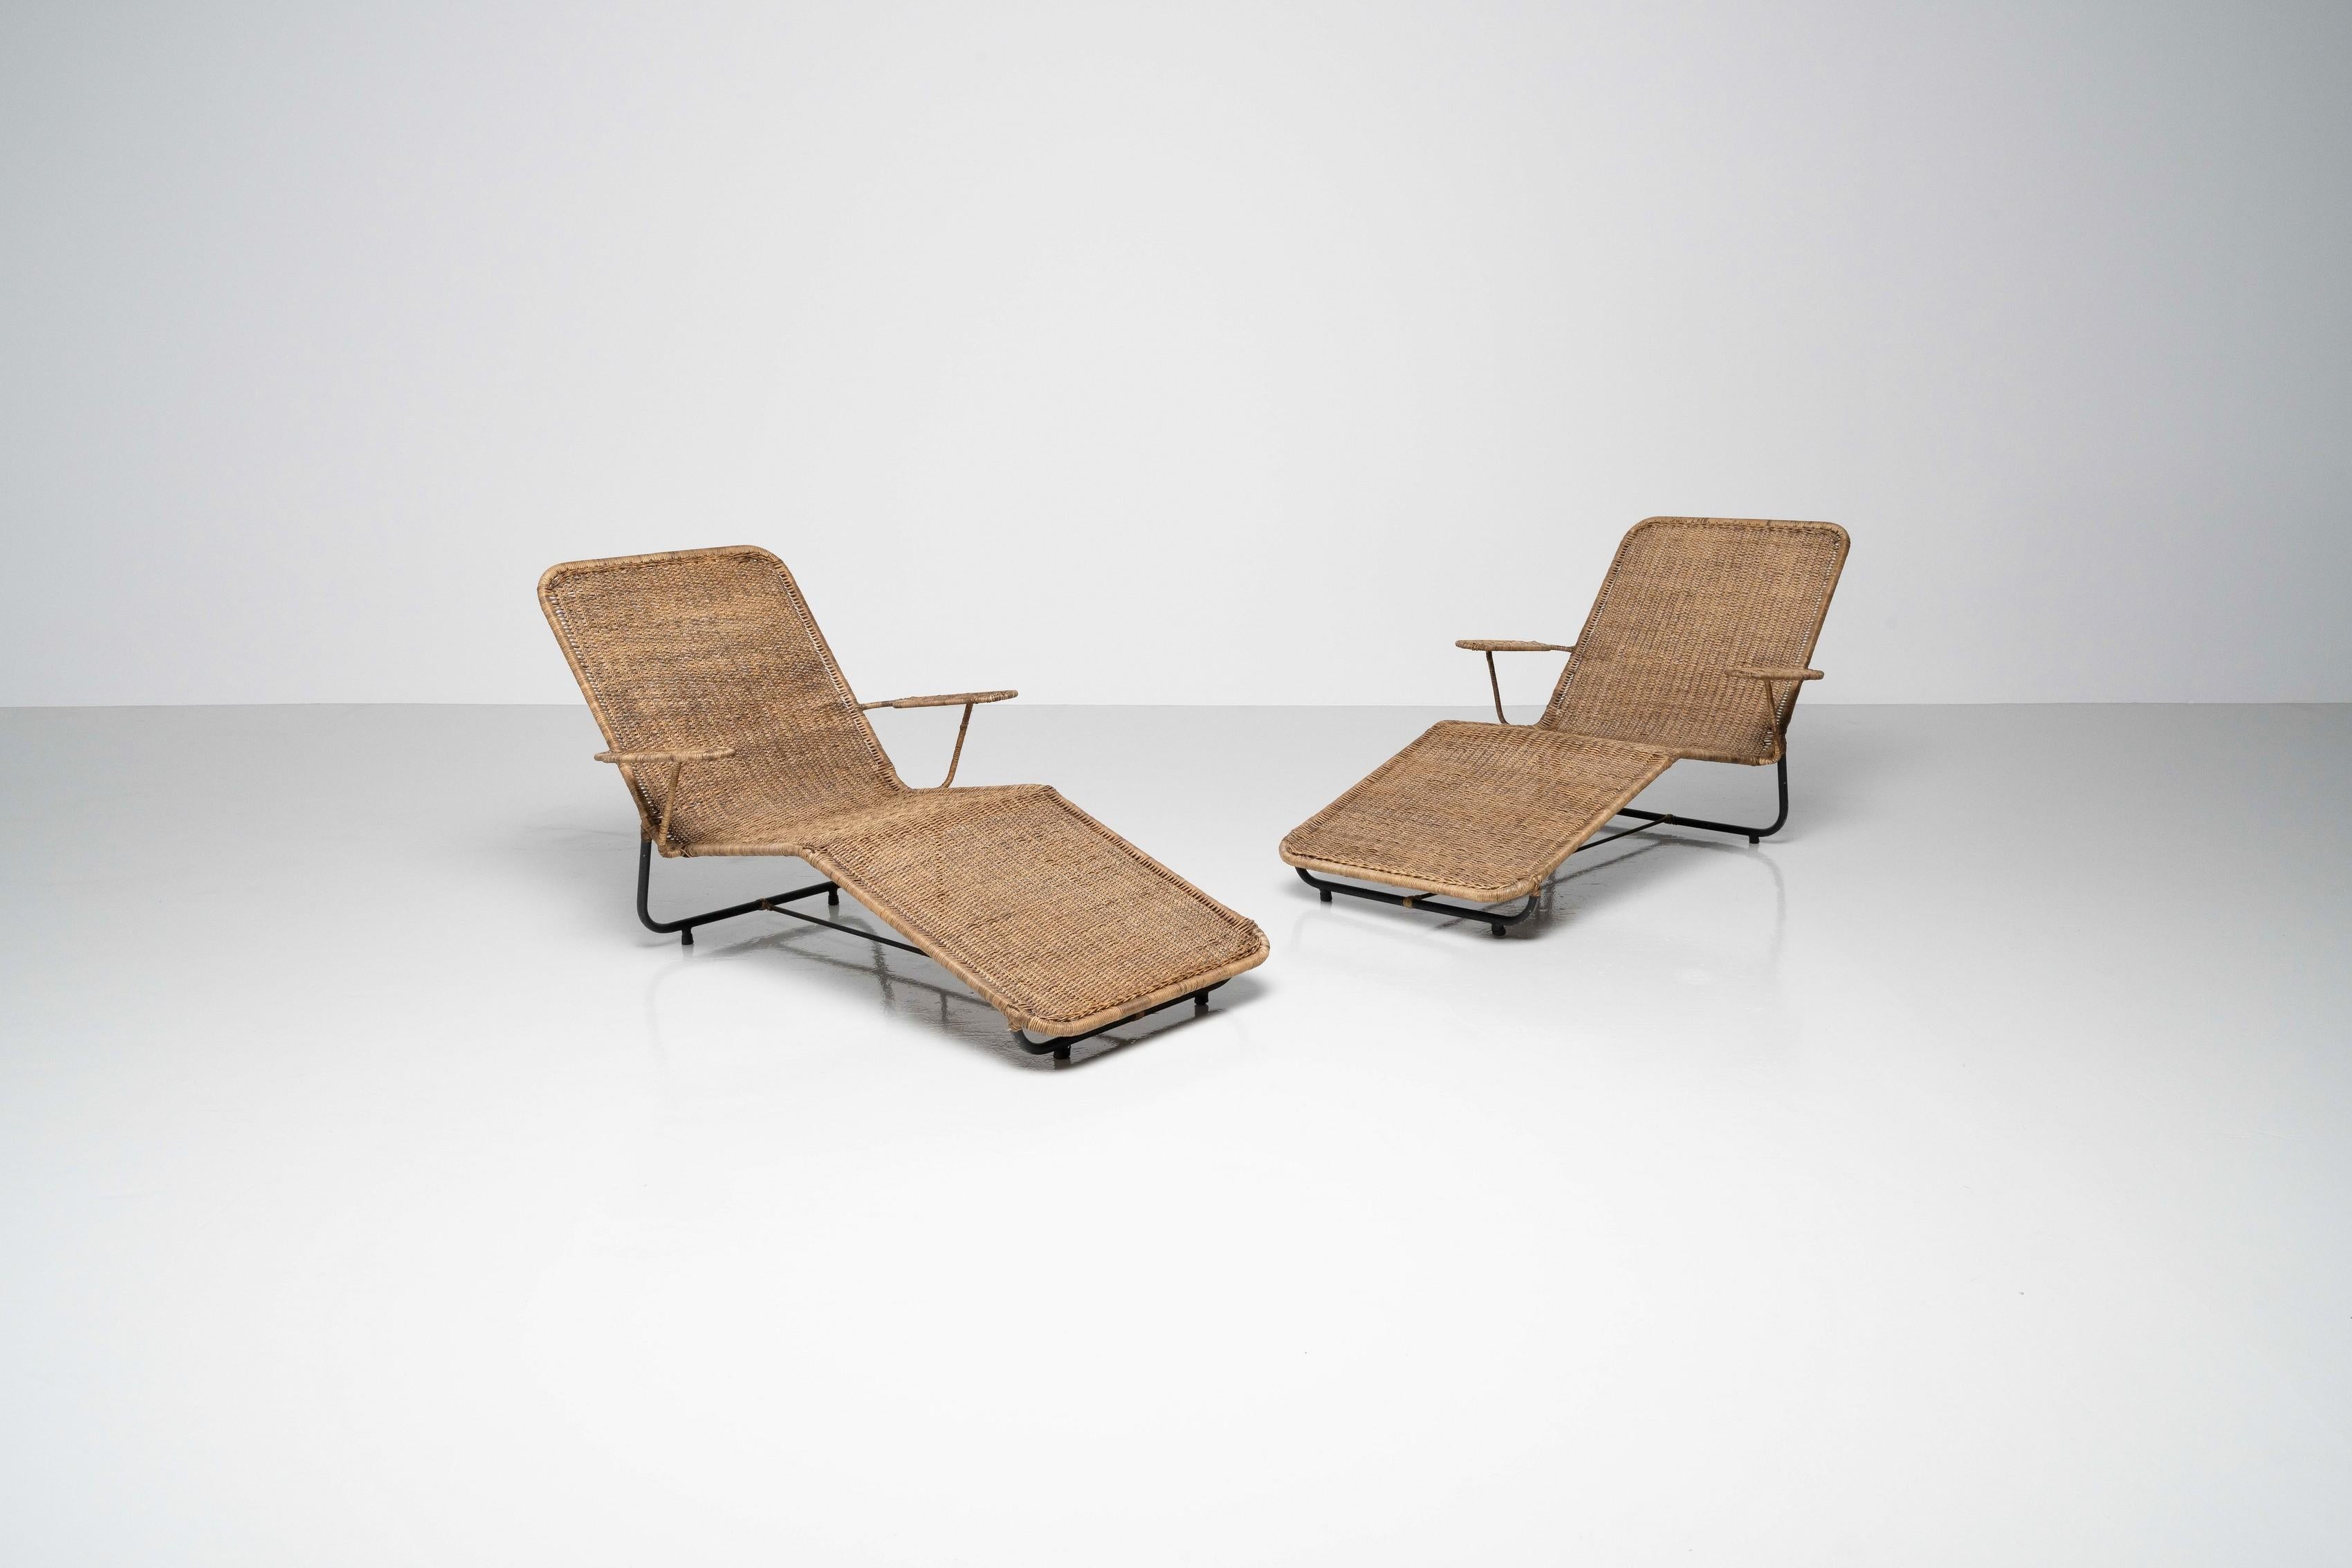 Ein schönes Paar Lounge-Sessel aus Rattan von Carlo Hauner und Martin Eisler, hergestellt von Forma Móveis in Brasilien im Jahr 1955. Die Stühle sind in vollem Originalzustand und wurden noch nie auseinandergenommen. Die Gesamtpatina sieht